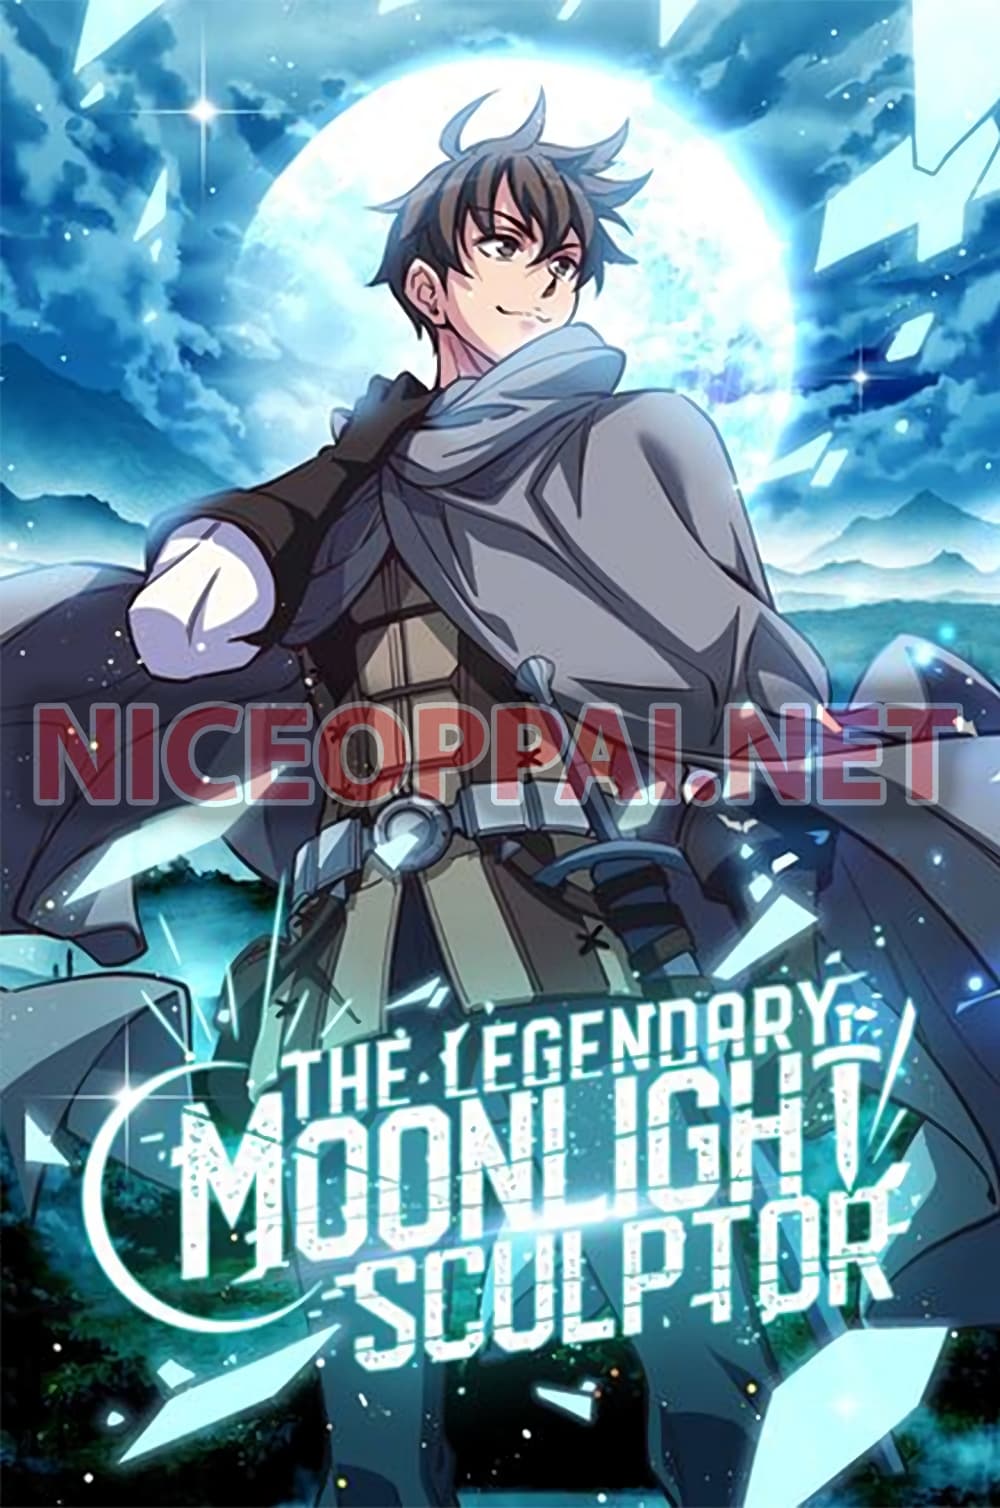 Legendary Moonlight Sculptor 169 (1)